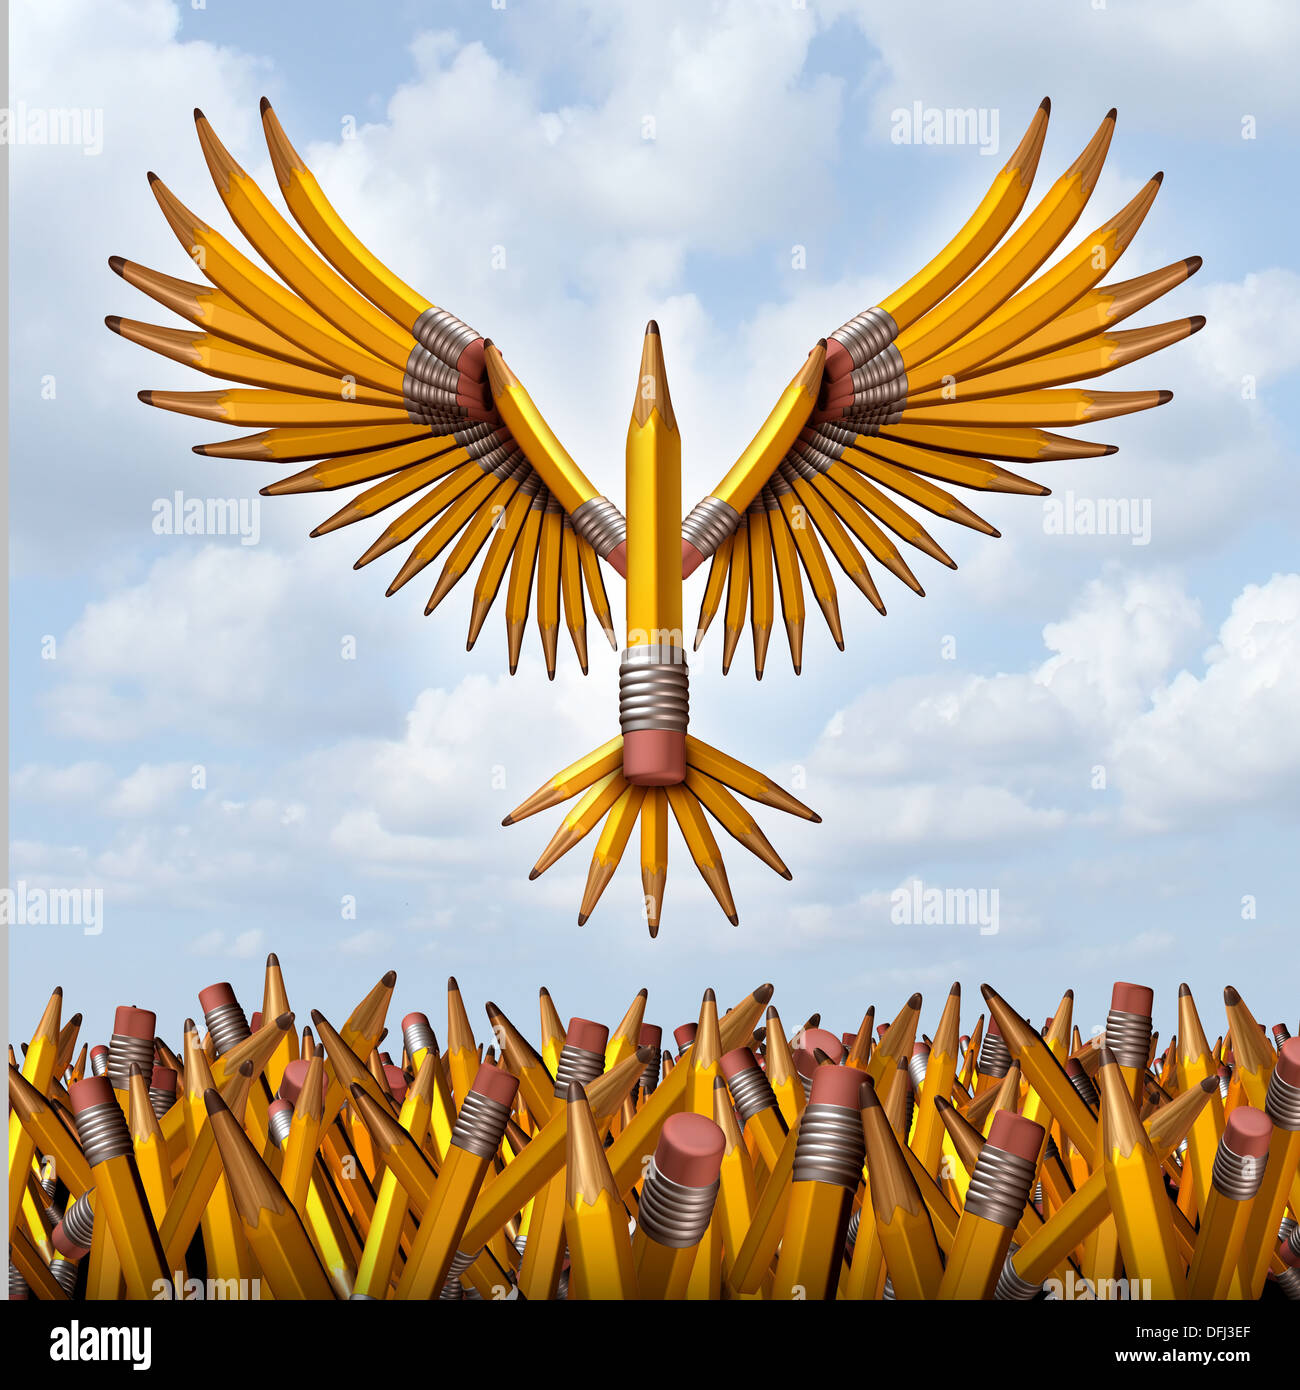 Prenez le vol succès créatif concept avec un groupe de trois dimensions crayons jaunes dans la forme d'un oiseau au décollage et s'échappant de la confusion à la liberté comme un symbole des programmes d'éducation et de la créativité dans l'innovation des entreprises Banque D'Images